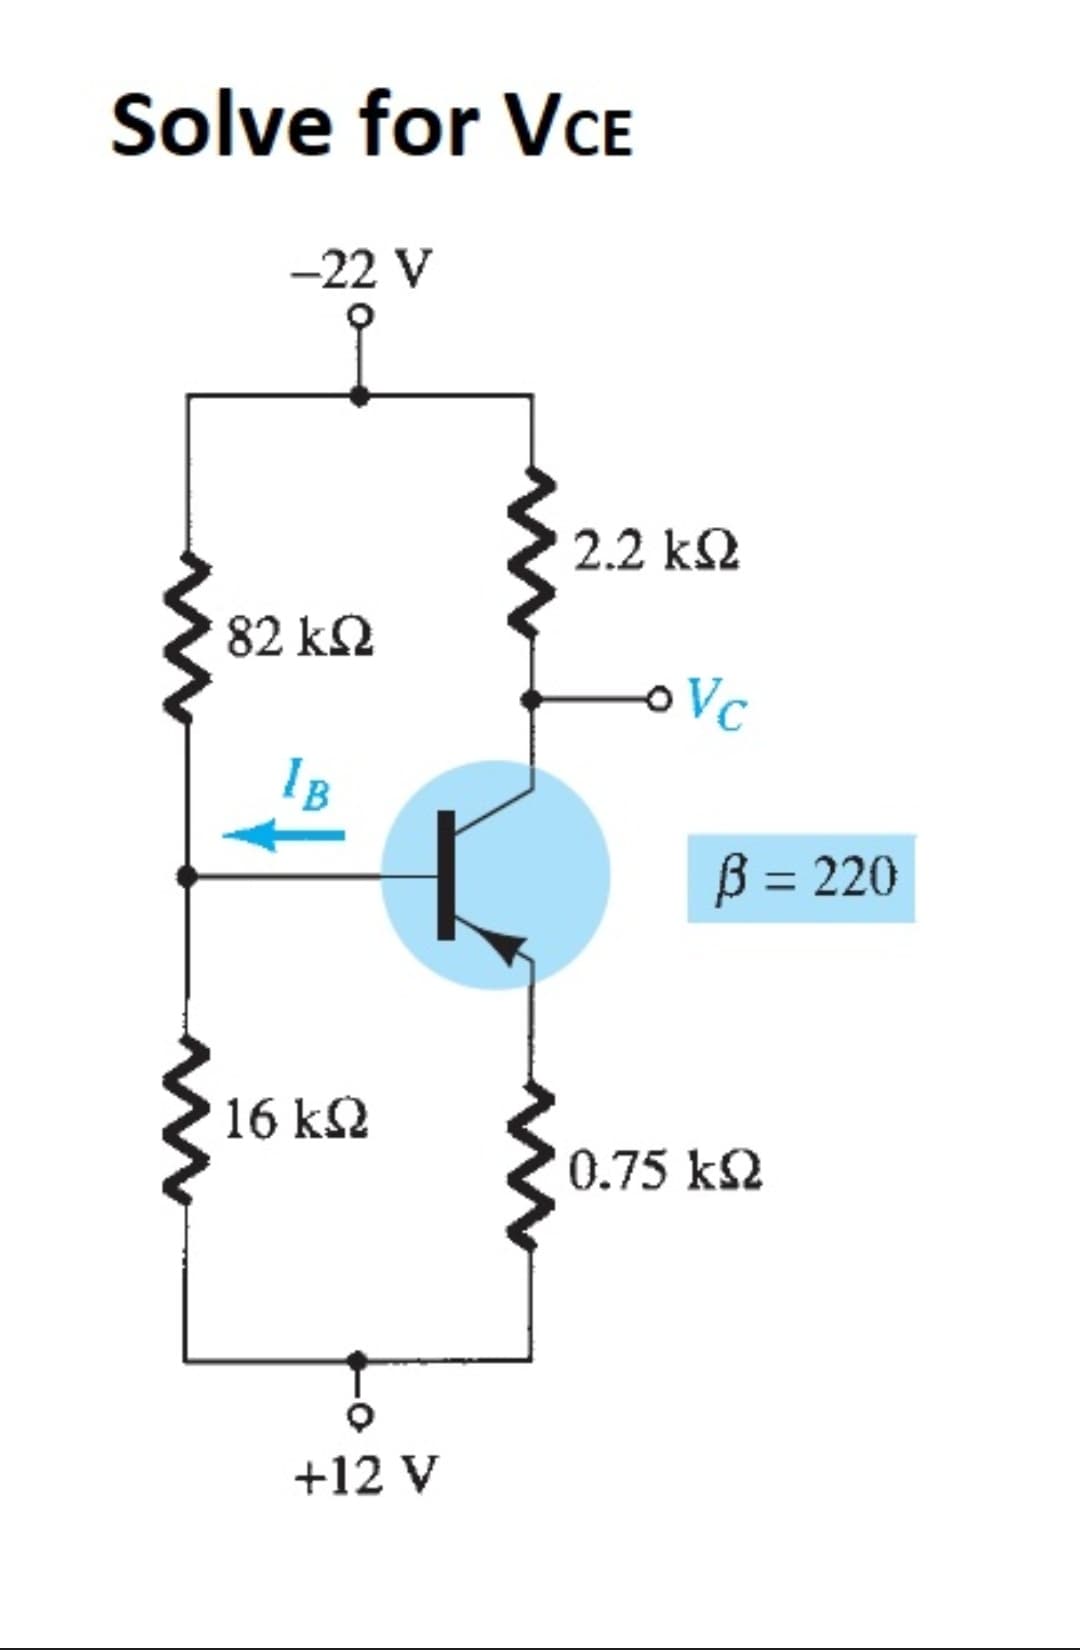 Solve for VCE
-22 V
2.2 k2
82 k2
Vc
B = 220
16 k2
0.75 k2
+12 V
